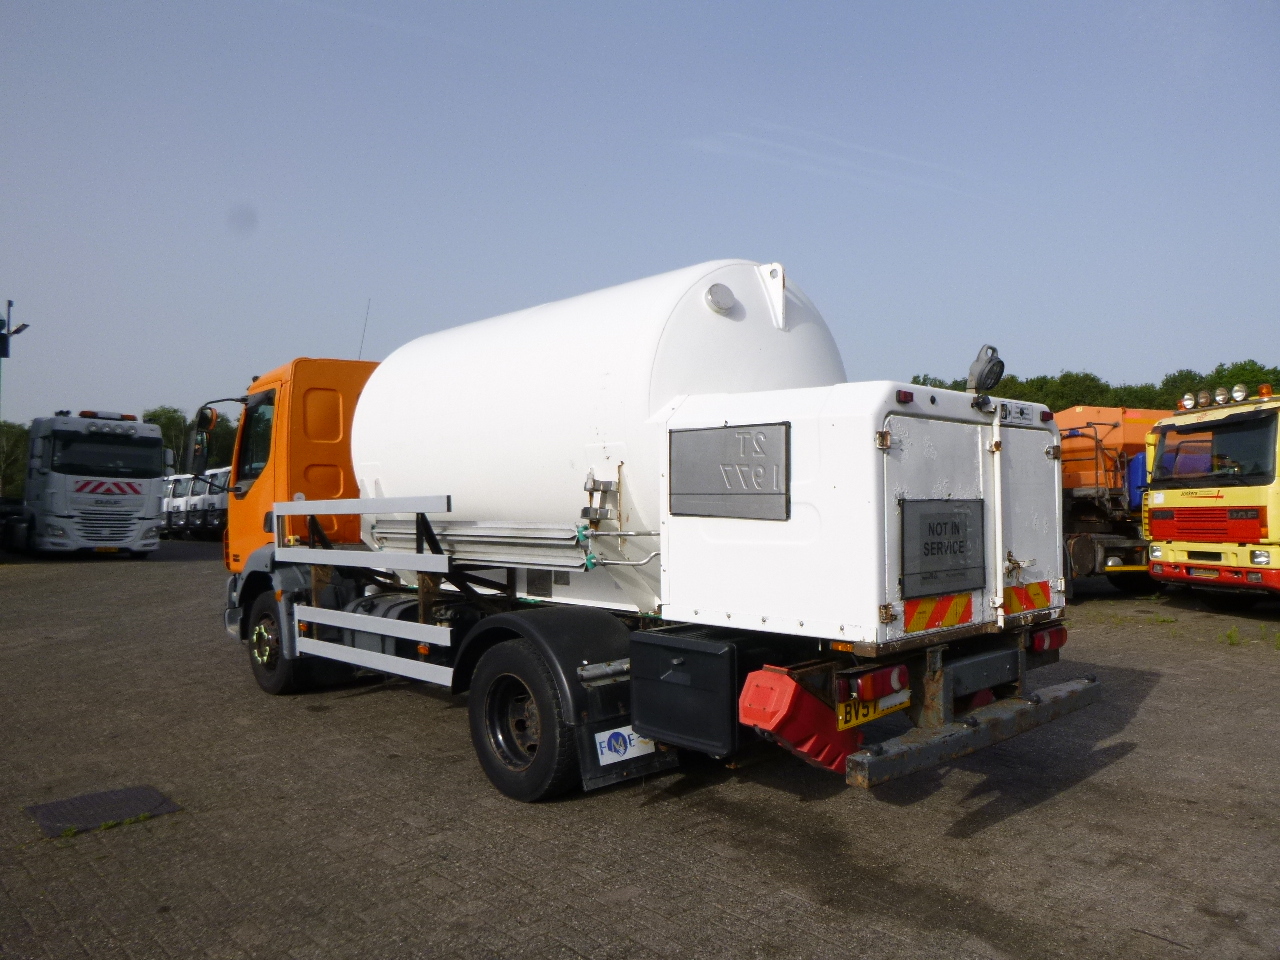 Cisternové vozidlo pro dopravu plynu D.A.F. LF 55.180 4x2 RHD ARGON gas truck 5.9 m3: obrázek 4